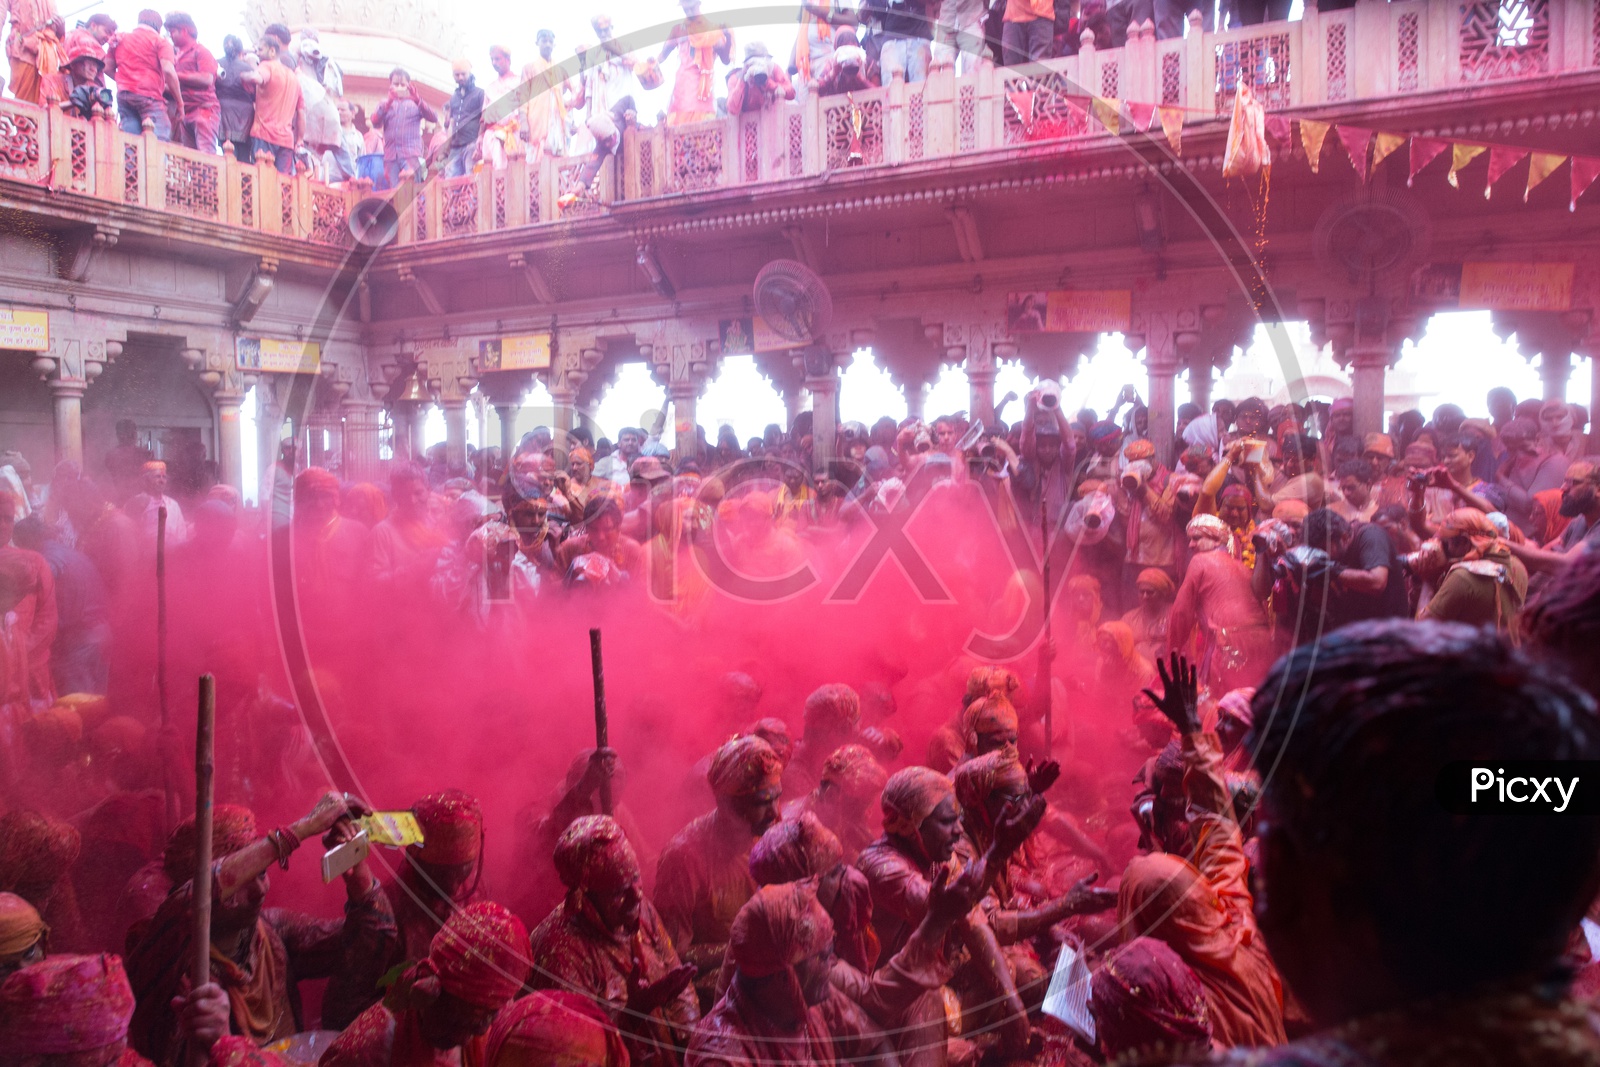 People celebrating Holi festival in Barsana